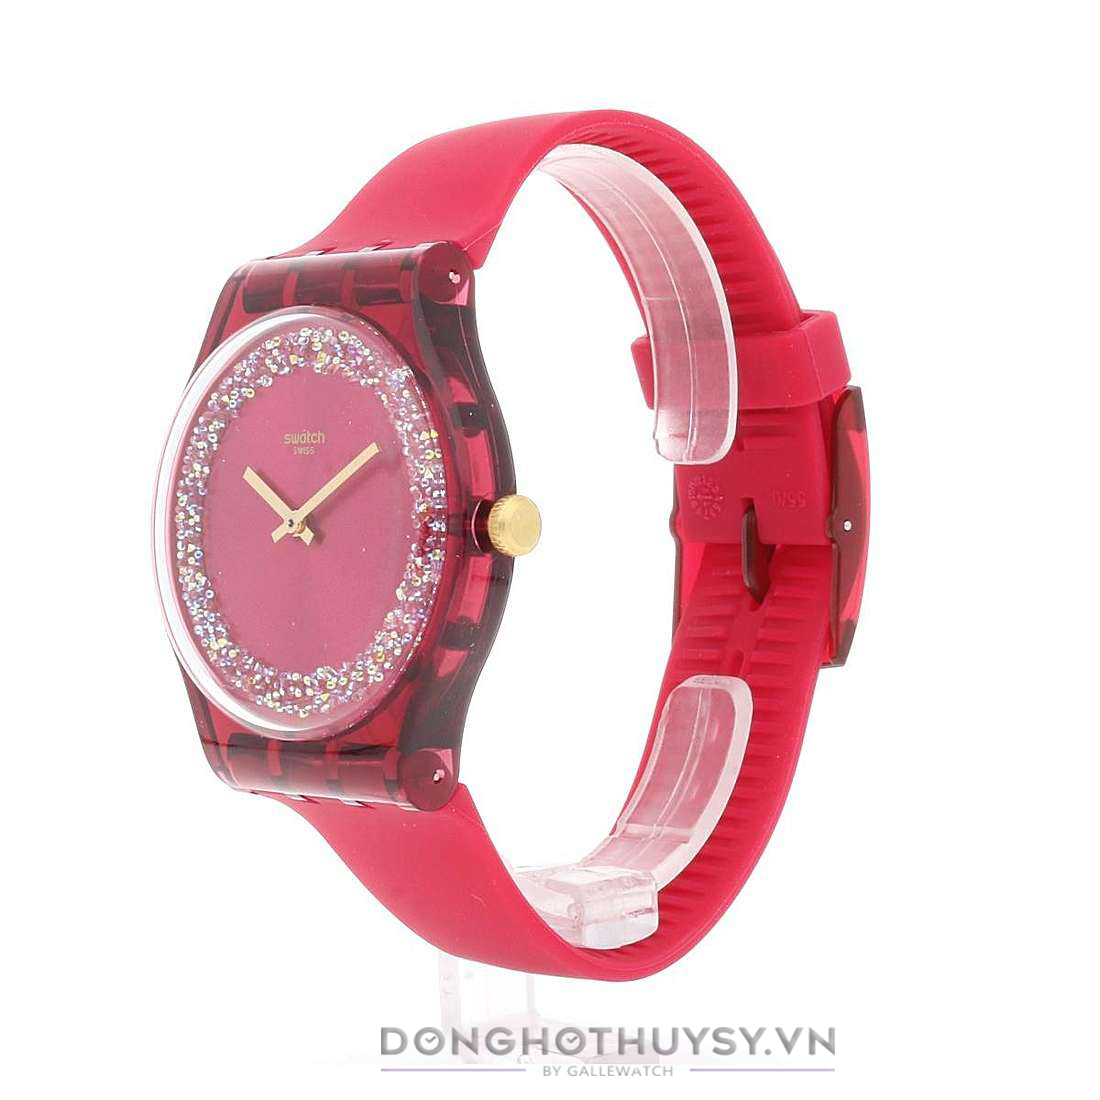 đồng hồ nữ swatch - món quà tặng sinh nhật cho người yêu vô cùng ý nghĩa